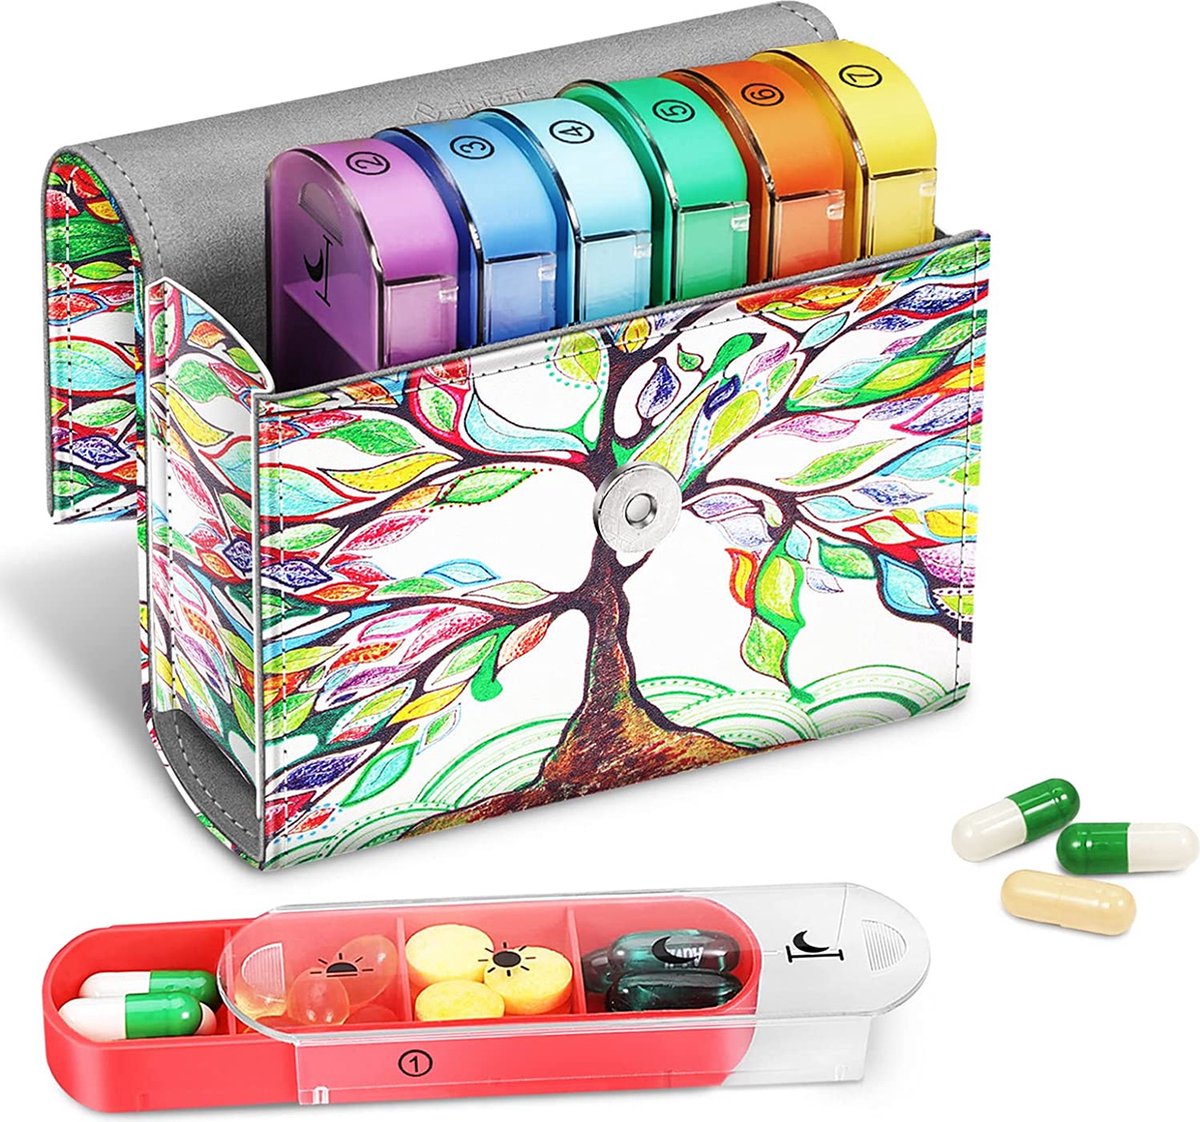 Tablettenbox 7 dagen 4 vakken - pillendoos 4 keer per dag met kunstleren tas en naamkaart medicijnbox voor pillen, vitamine visolie voor 's ochtends 's middags, 's avonds, liefdesboom